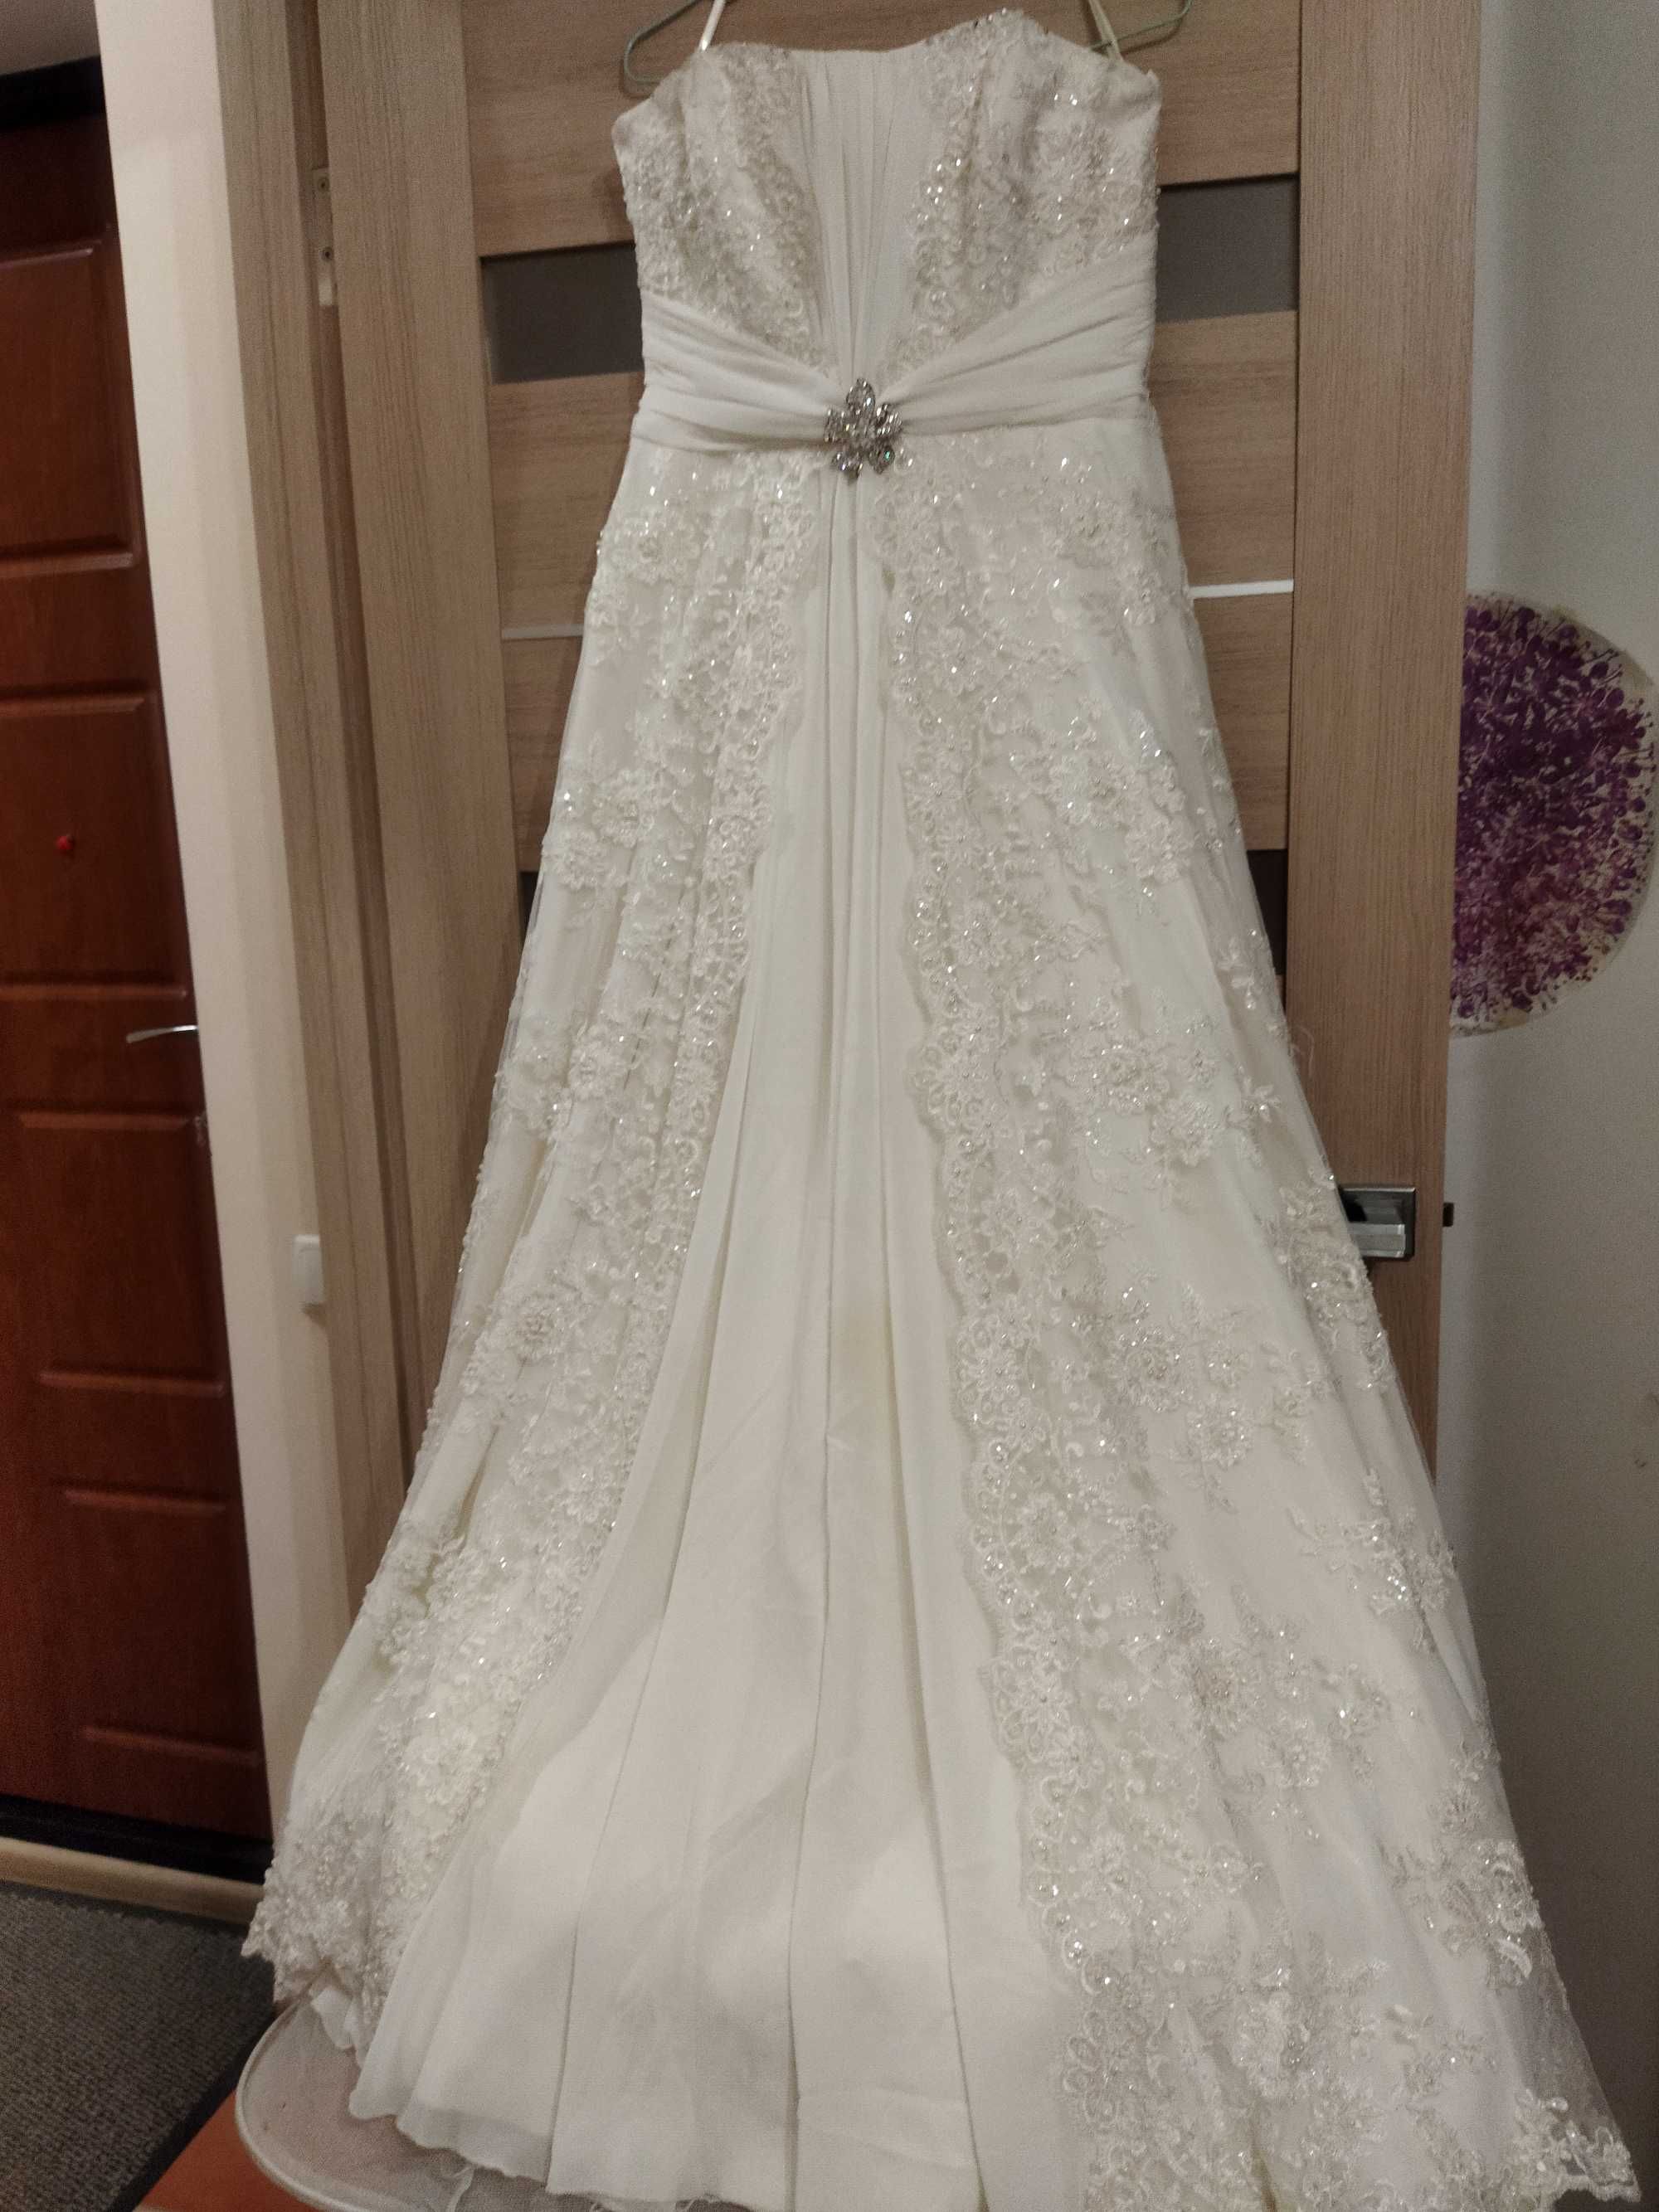 Плаття весільне, 50 розм., колір айворі, з шаллю, б/у. 3000грн.